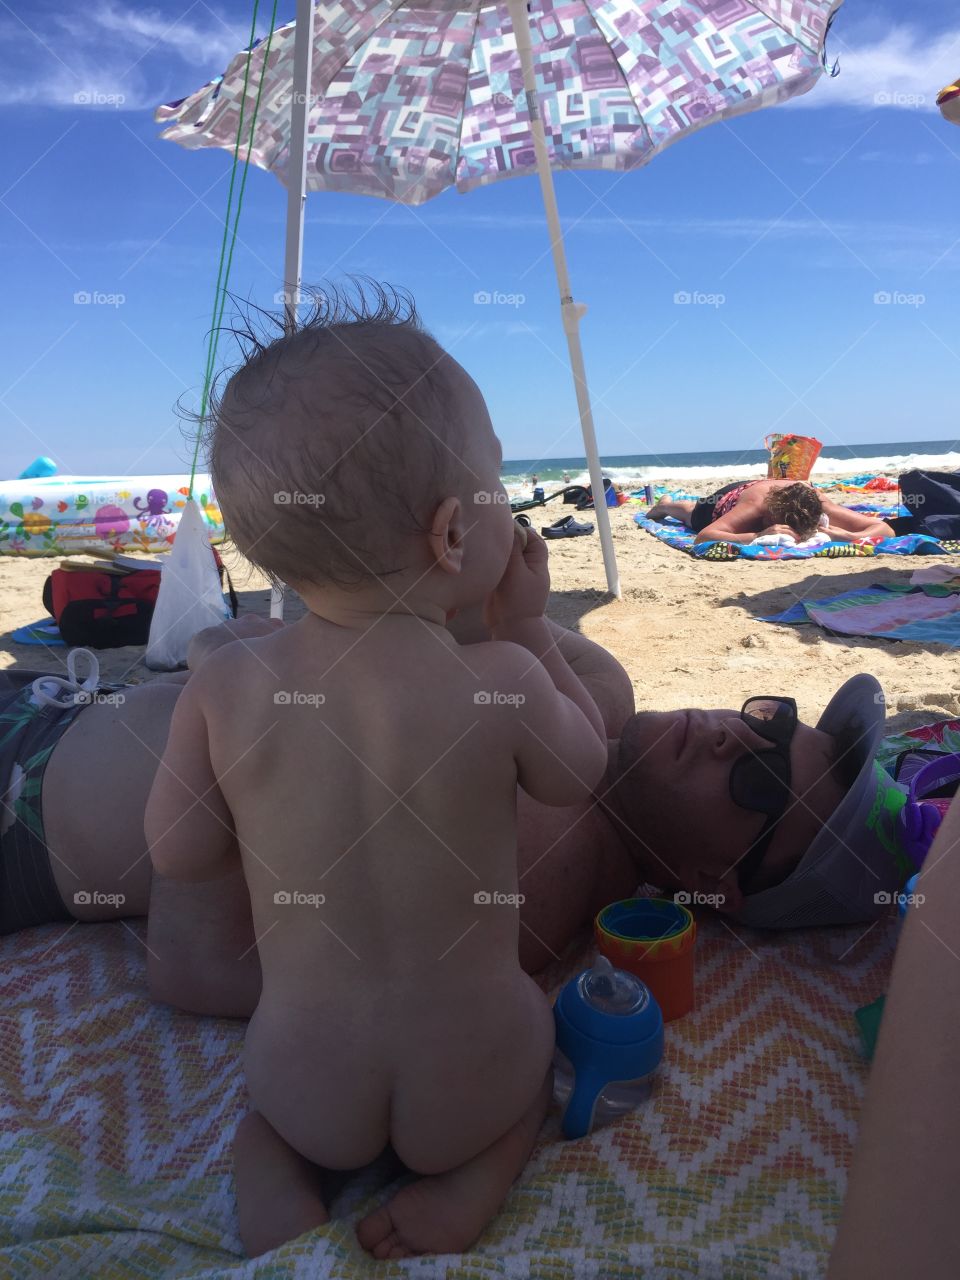 Beach baby butt